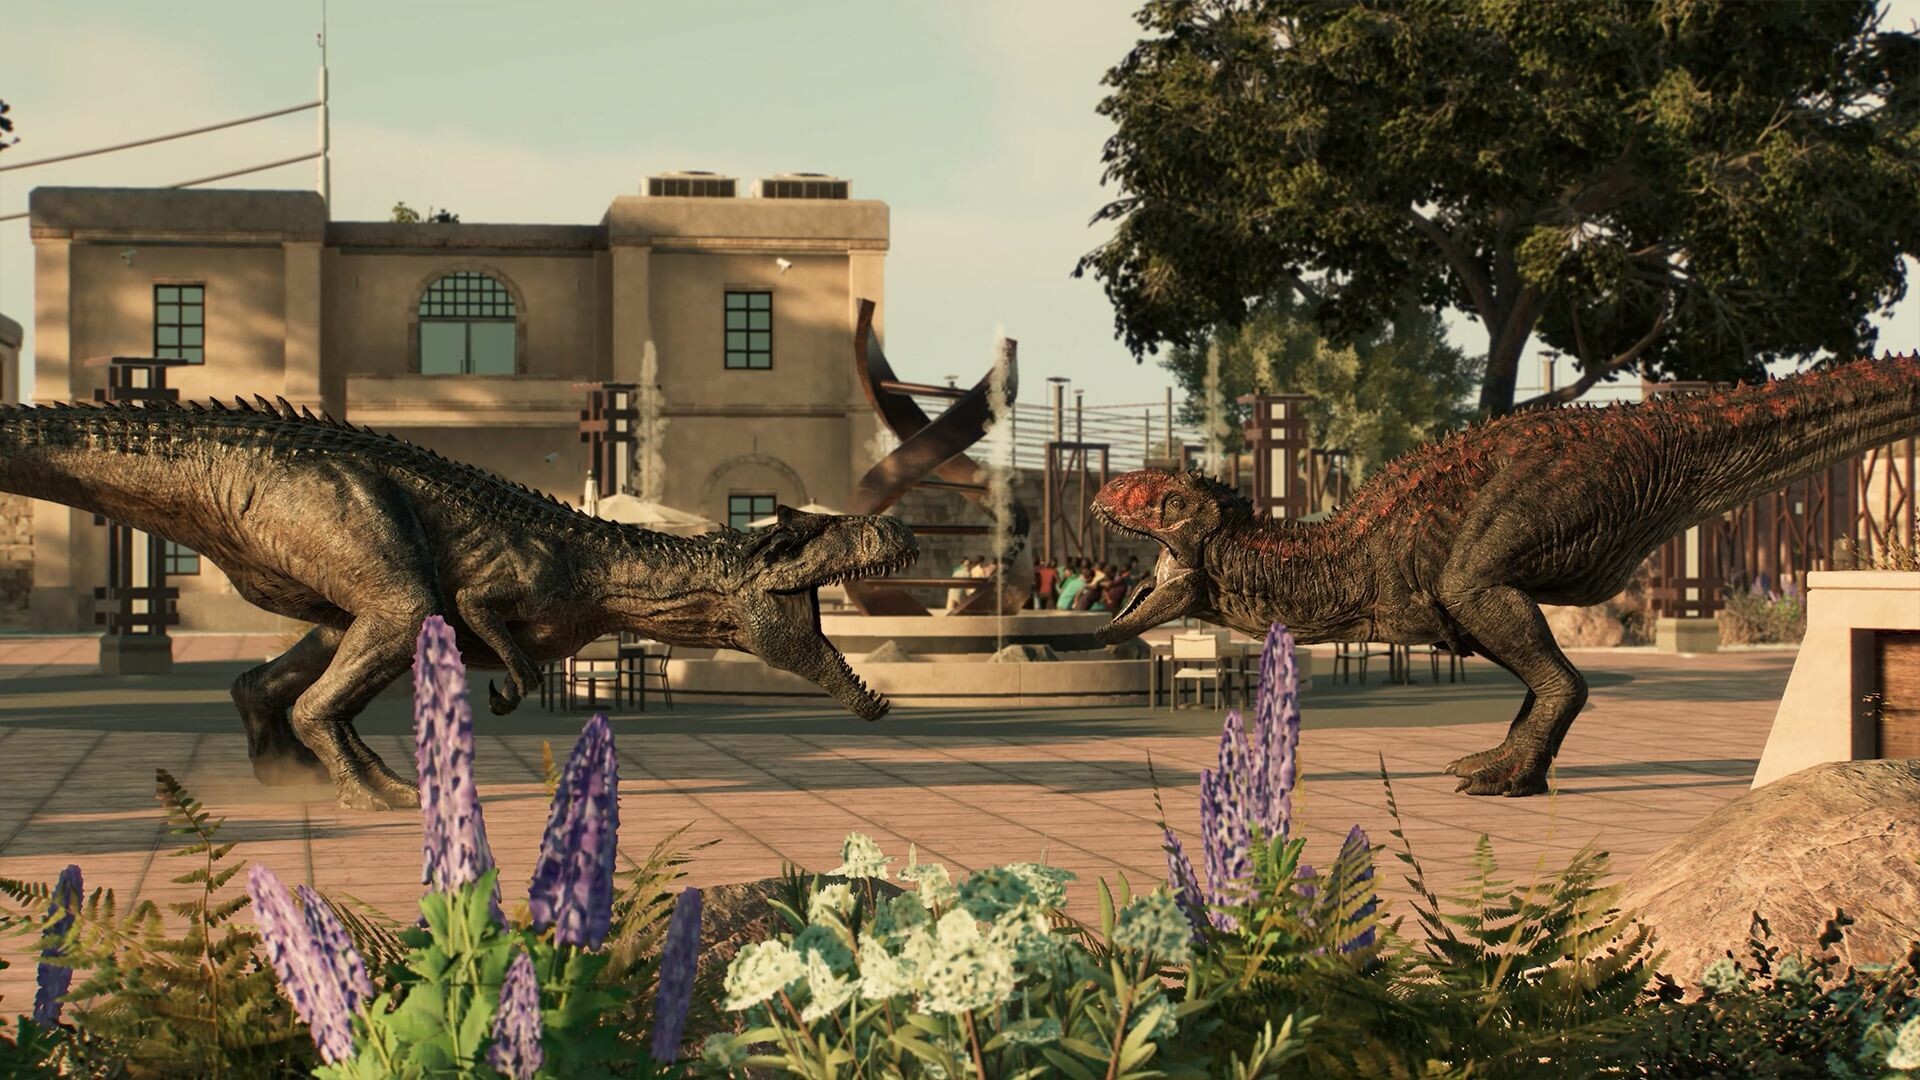 Steam Workshop::Jurassic World: Evolution 2 - Indominus Rex